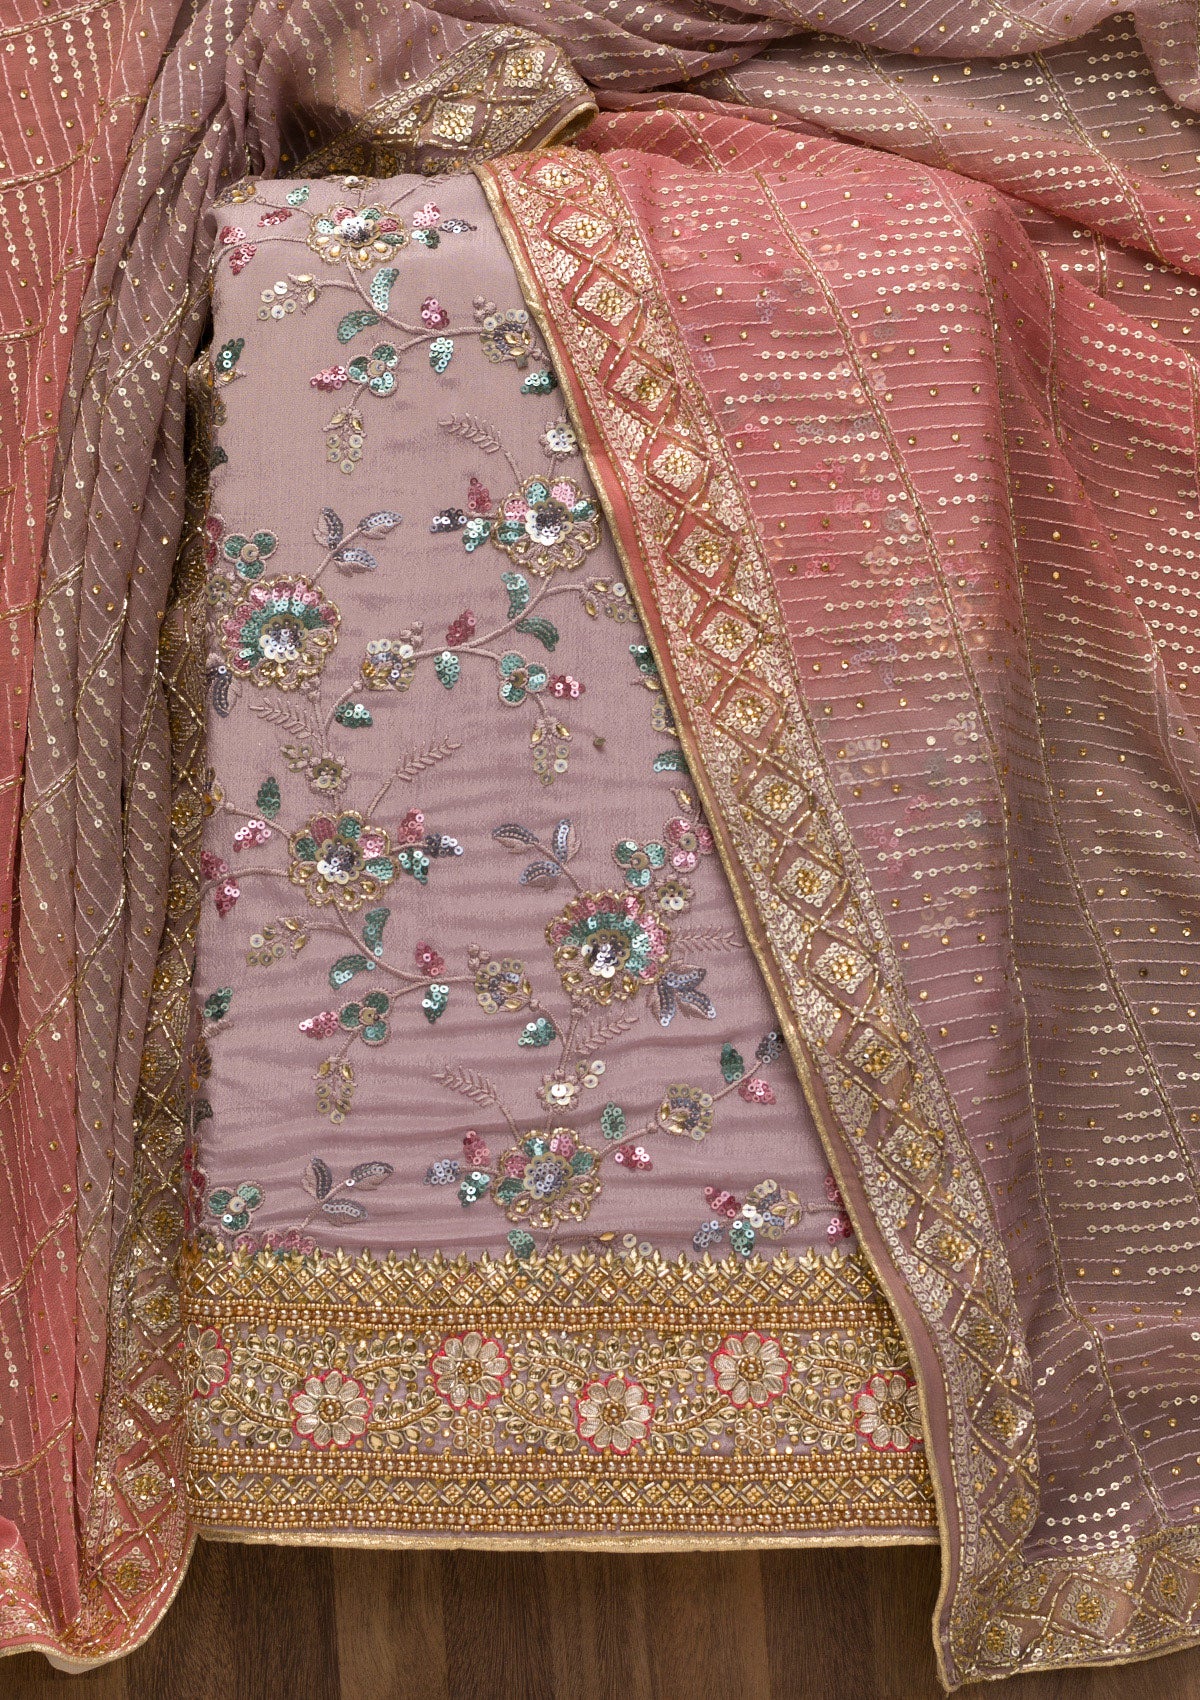 Lavender Sequins Georgette Unstitched Salwar Suit